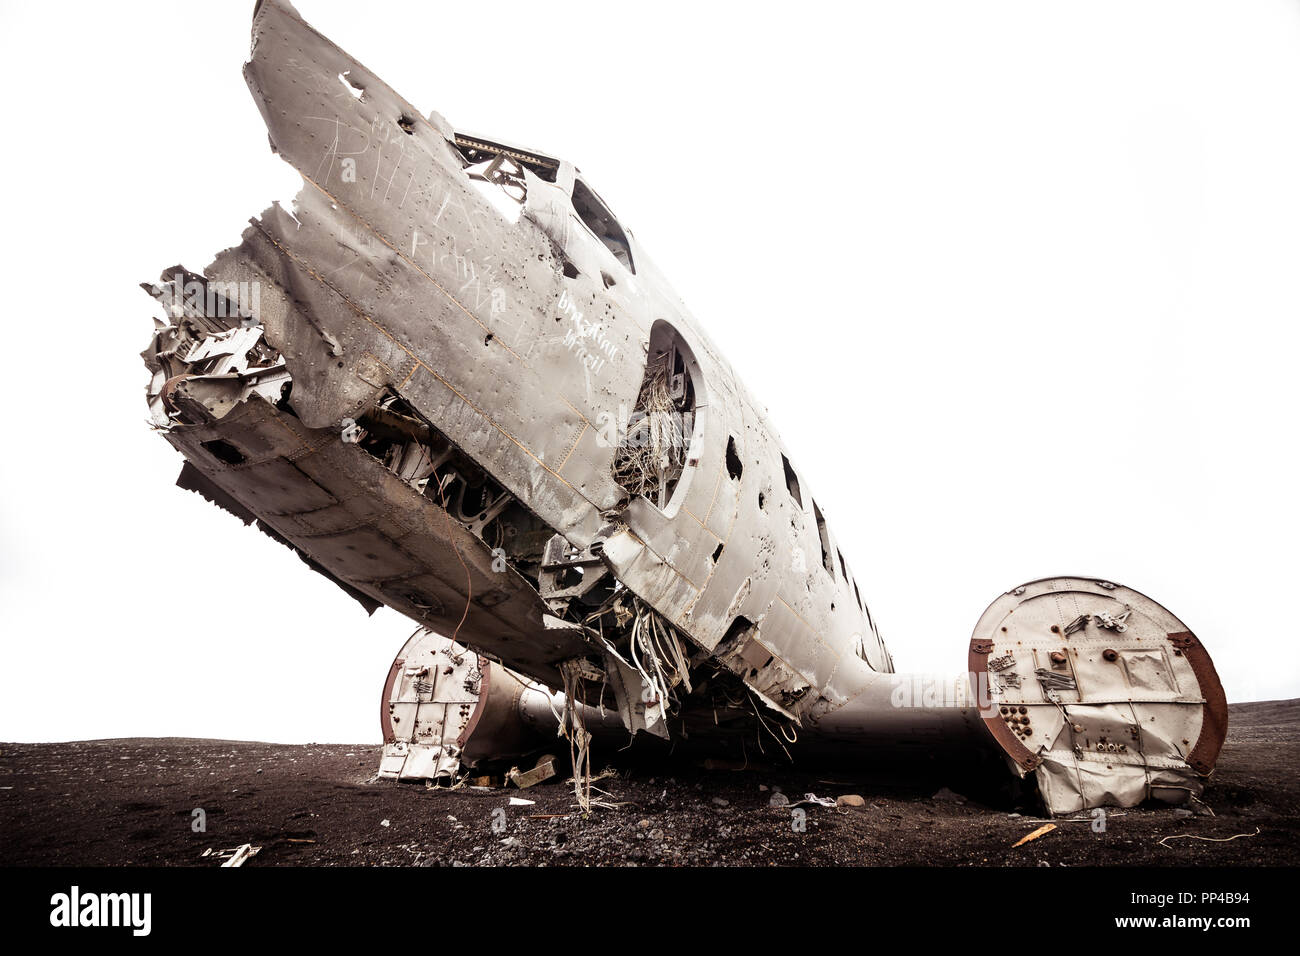 Avion écrasé en Islande Banque D'Images